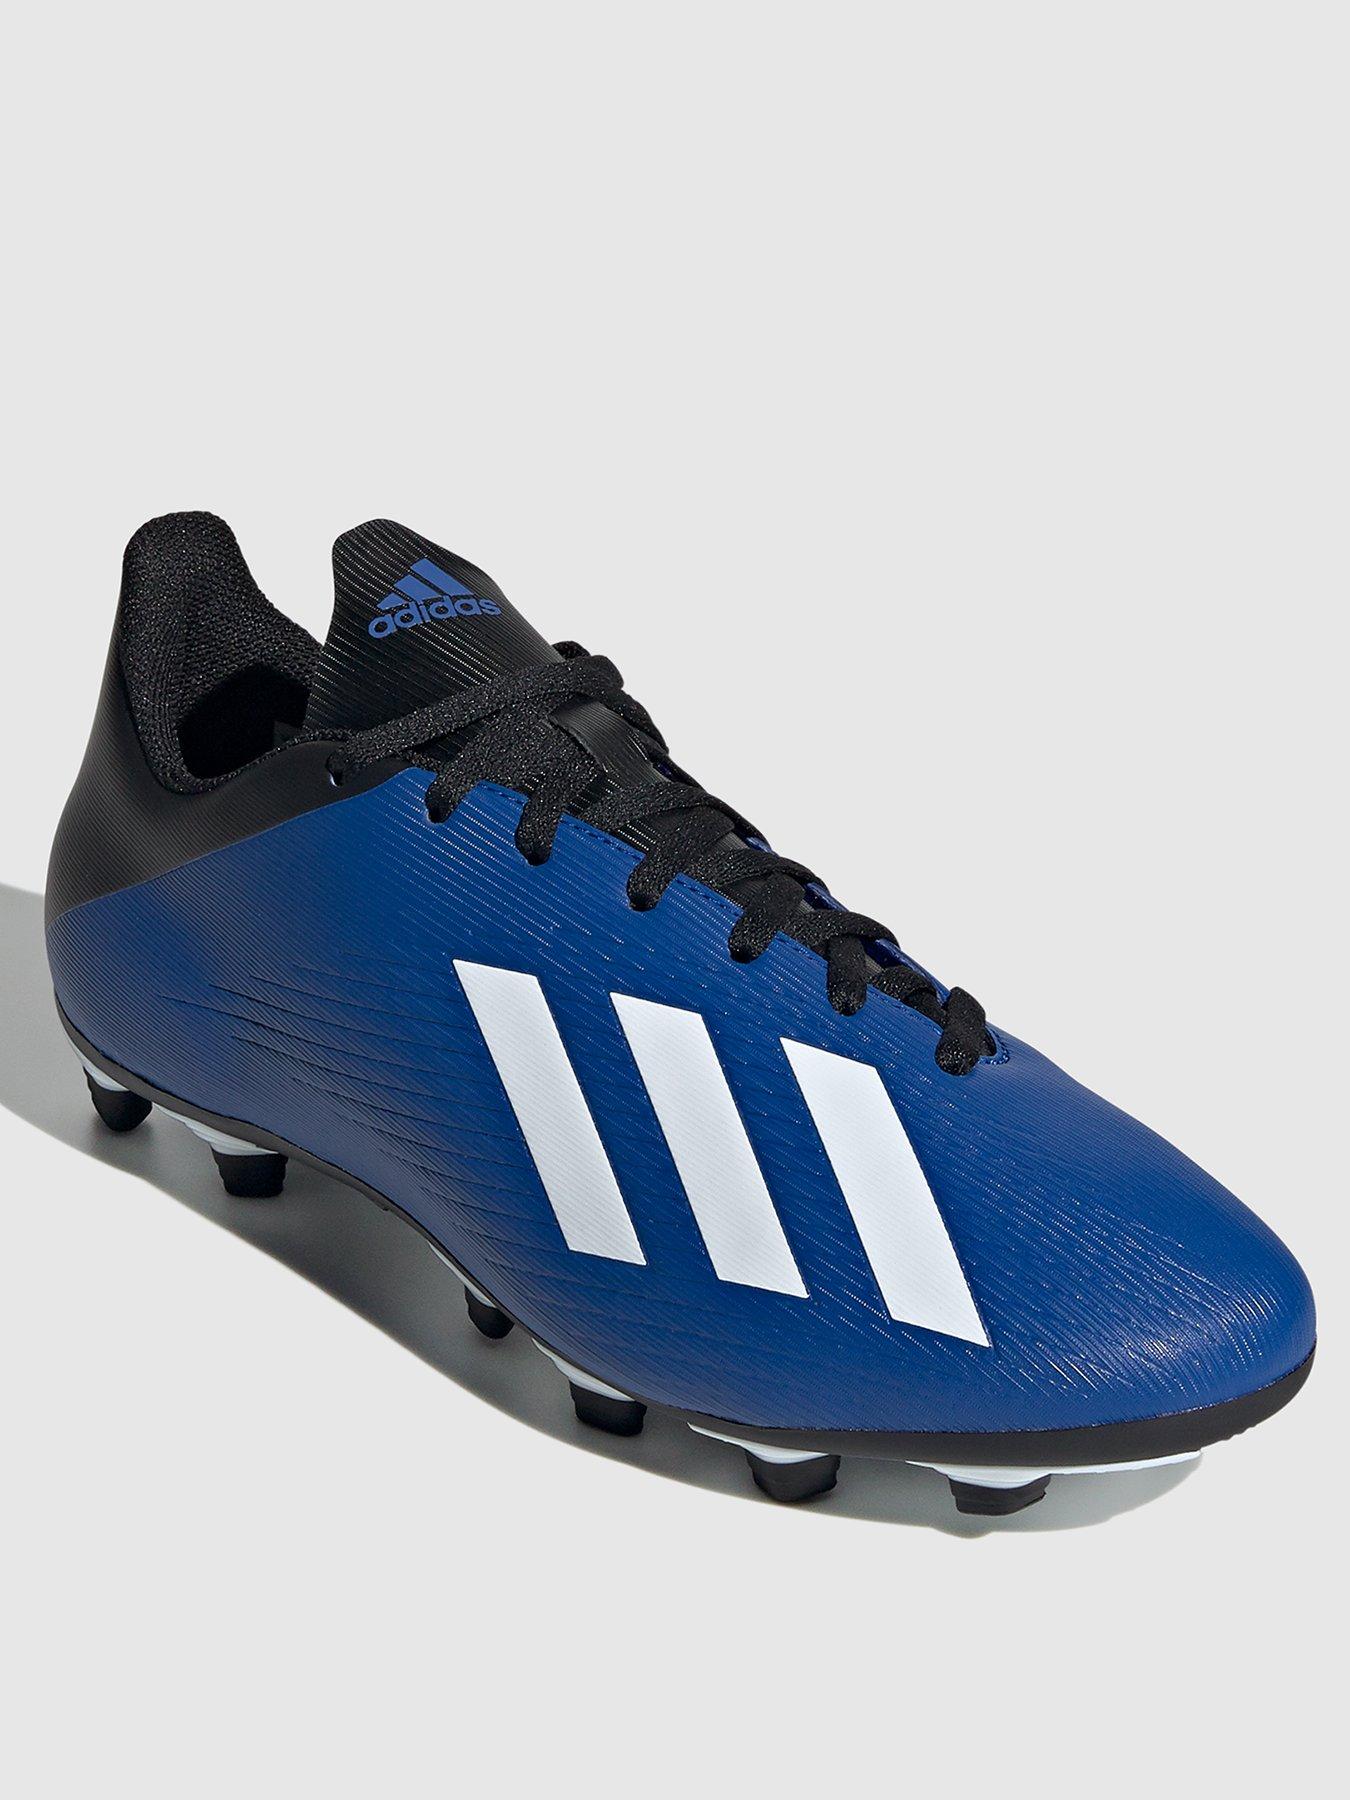 football shoes uk